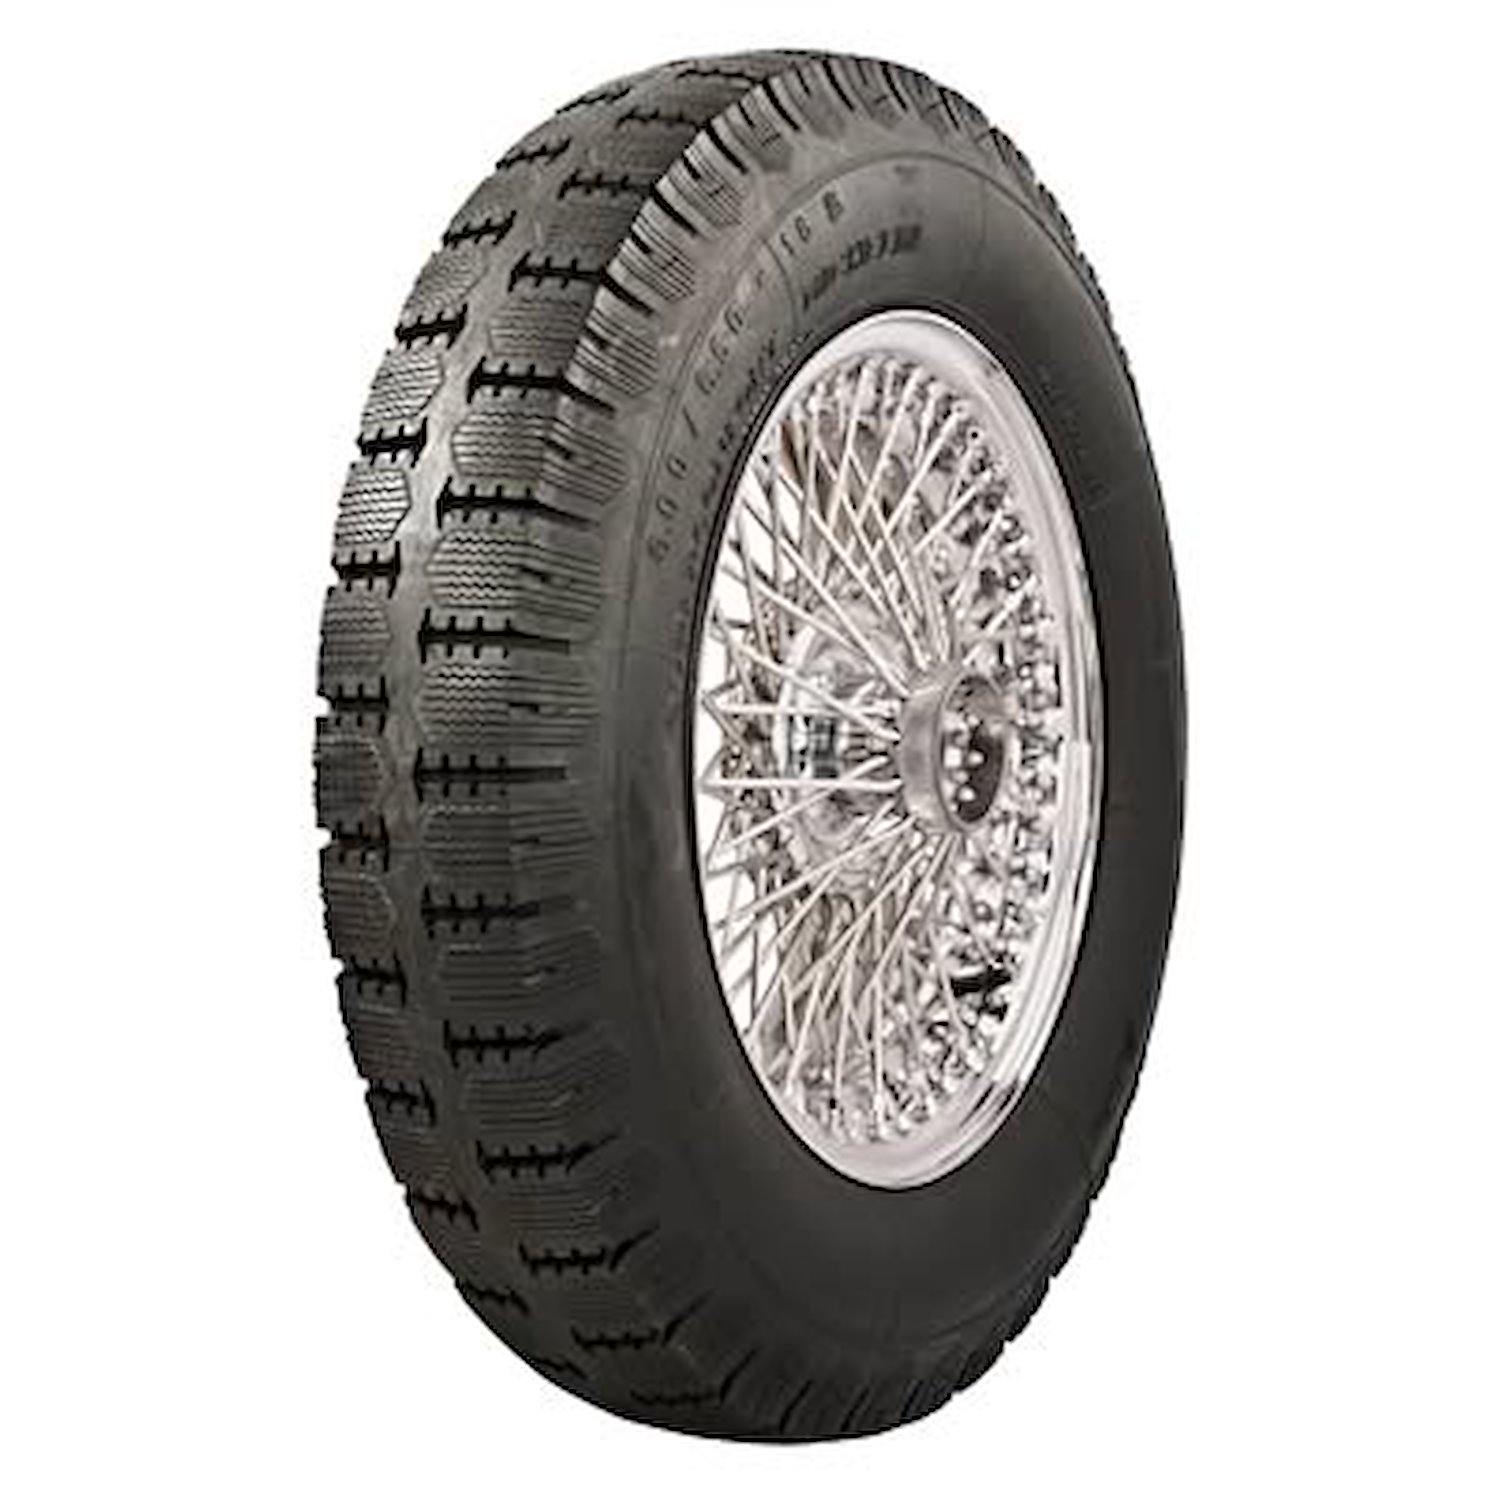 63160 Tire, Michelin Super Comfort Stop S, 150/160x40